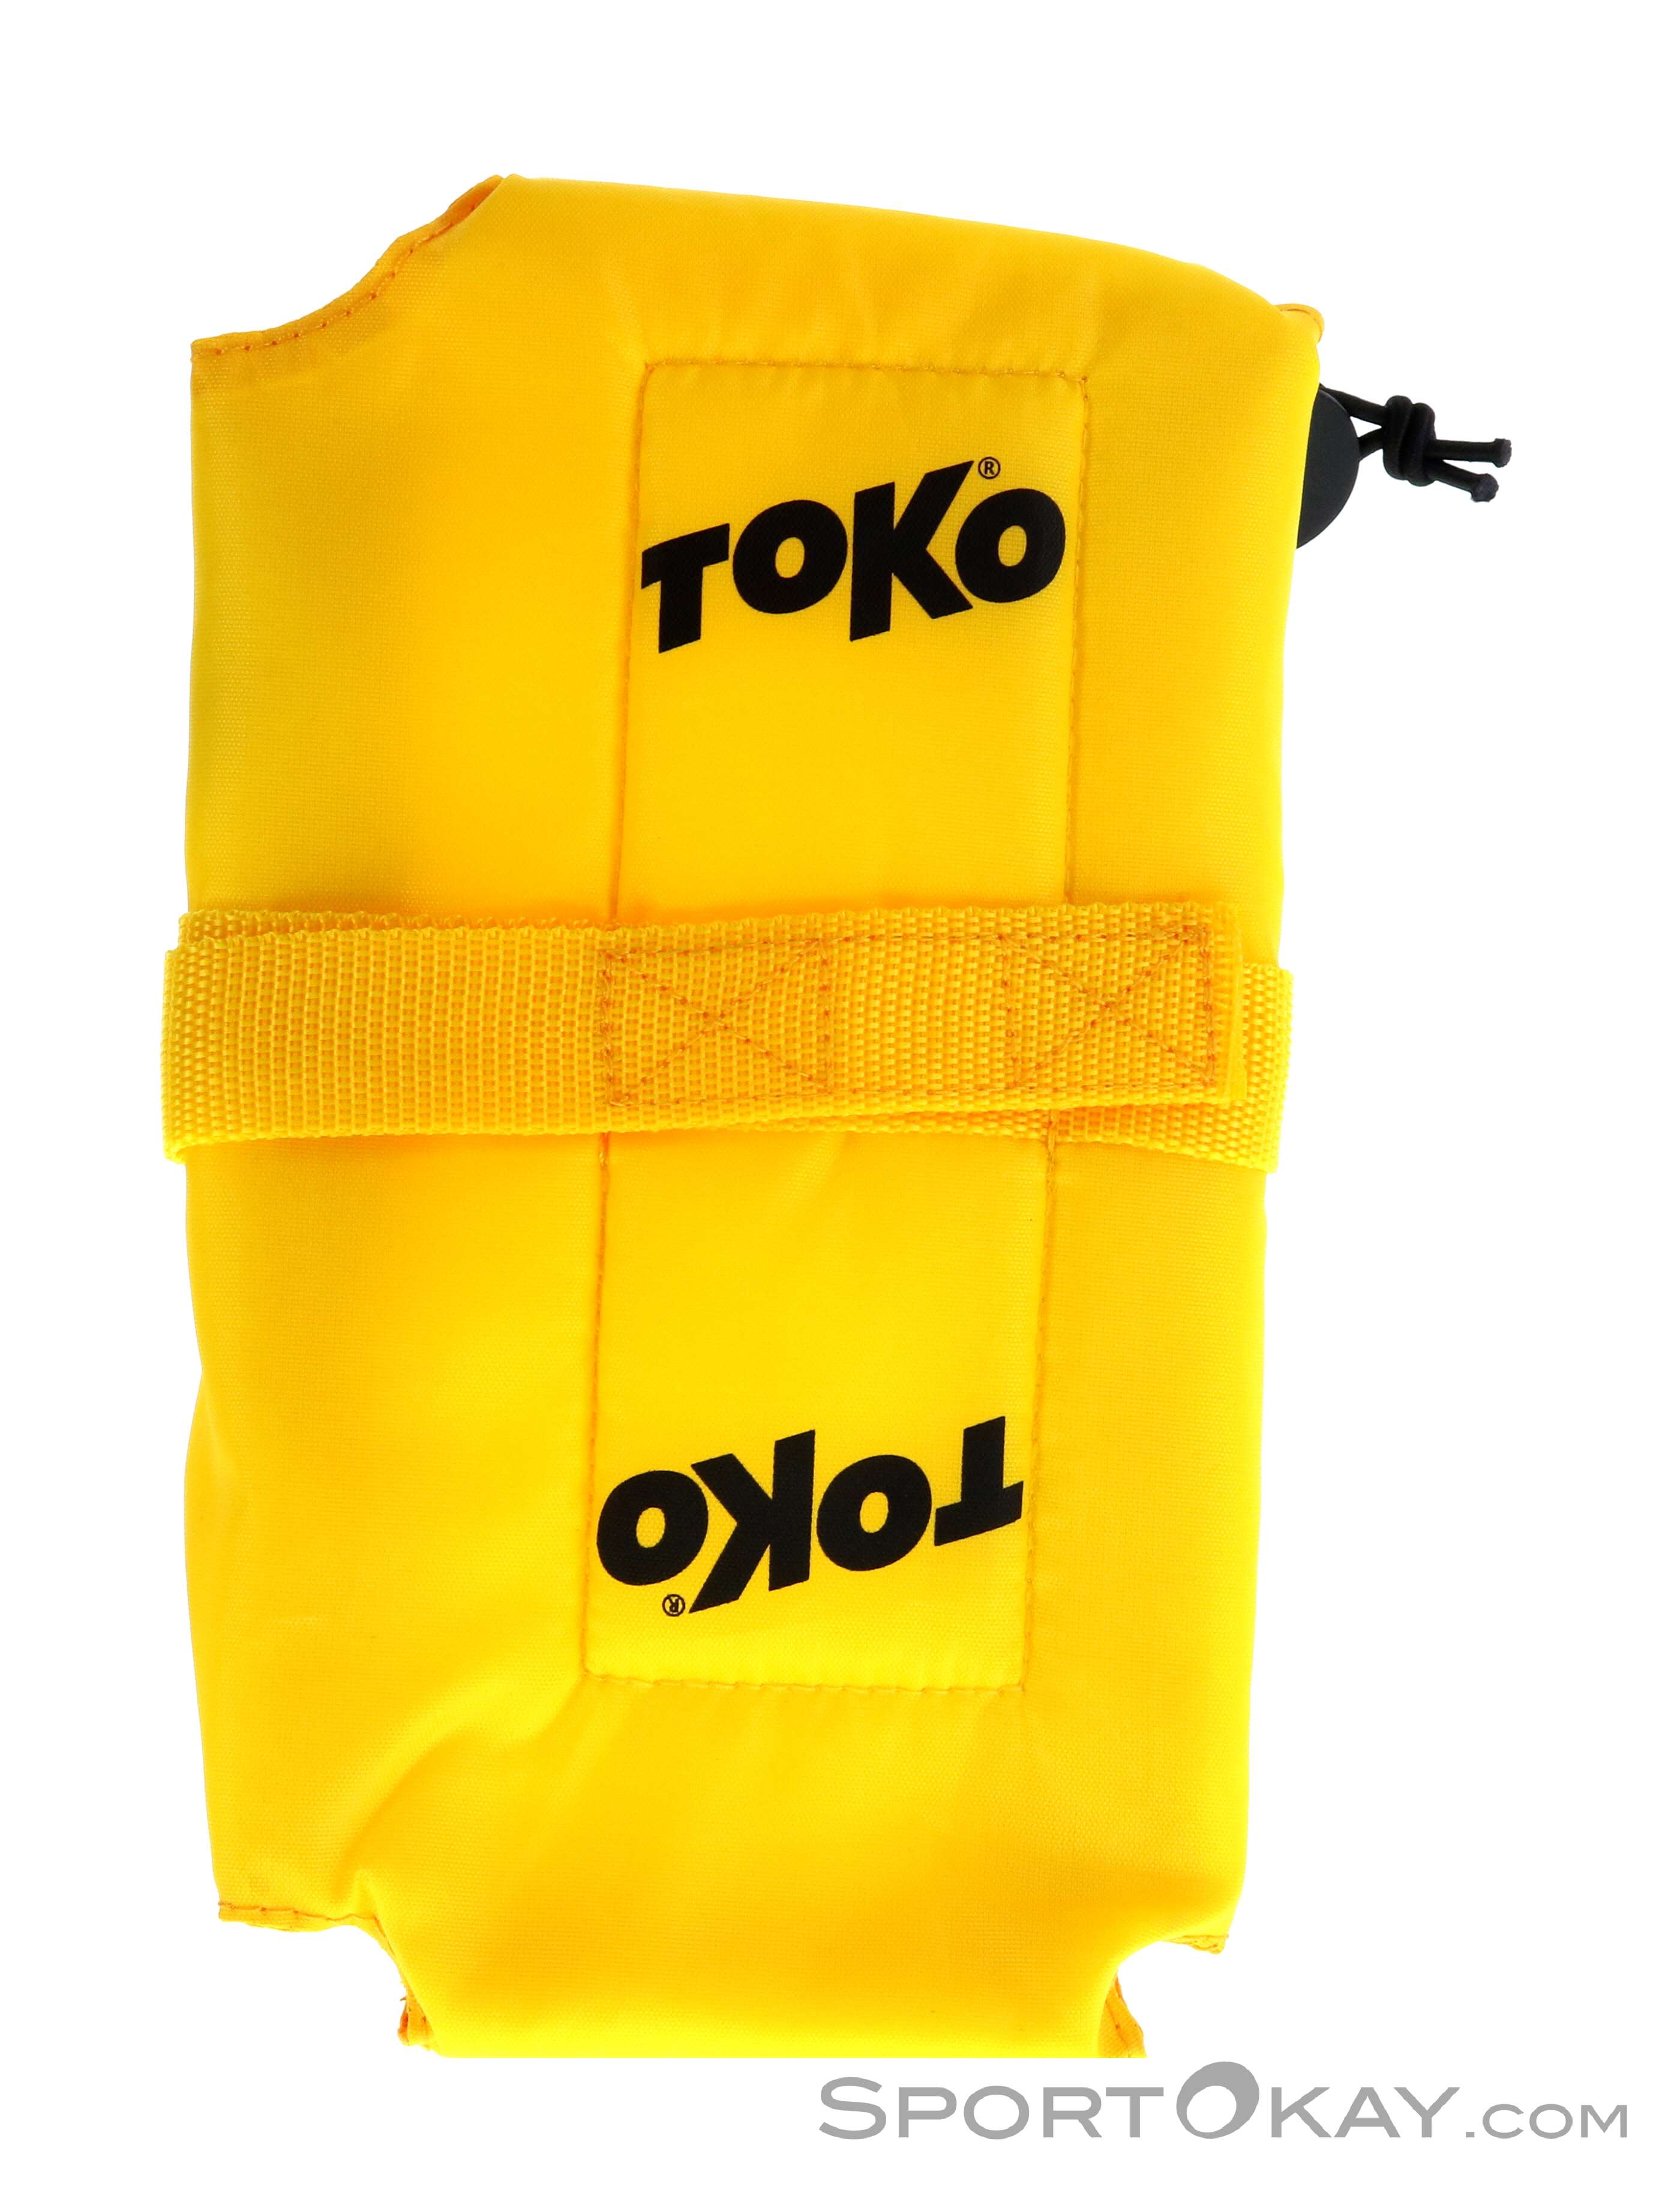 Toko Iron Cover Wachsbügeleisen Zubehör-Gelb-One Size